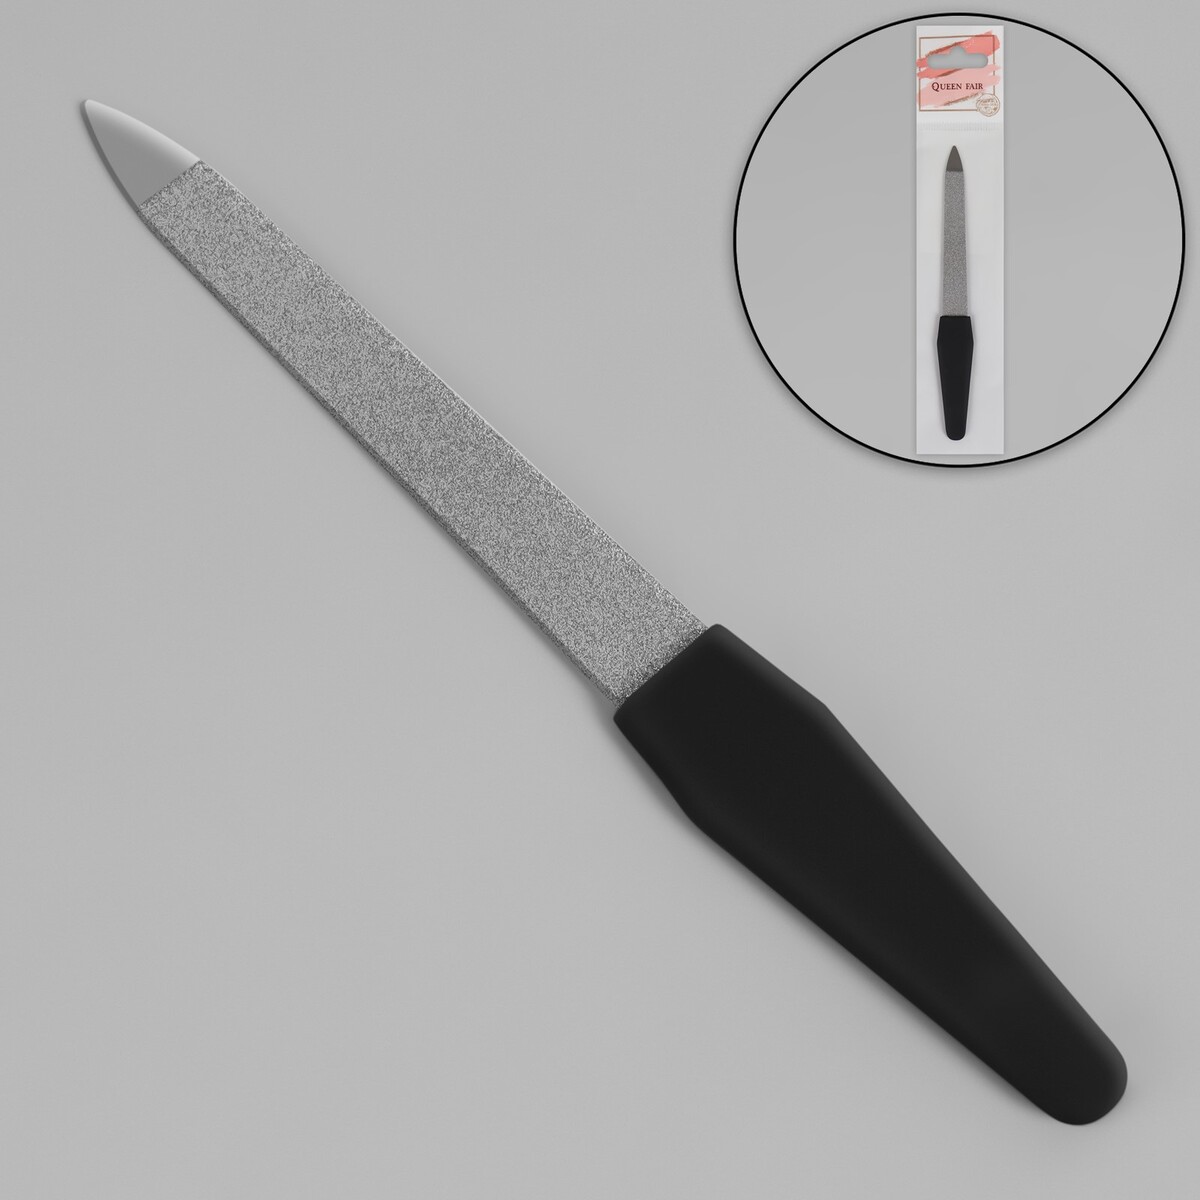 Пилка металлическая для ногтей, прорезиненная ручка, 12 см, цвет серебристый/черный пилка для искусст и натур ногтей